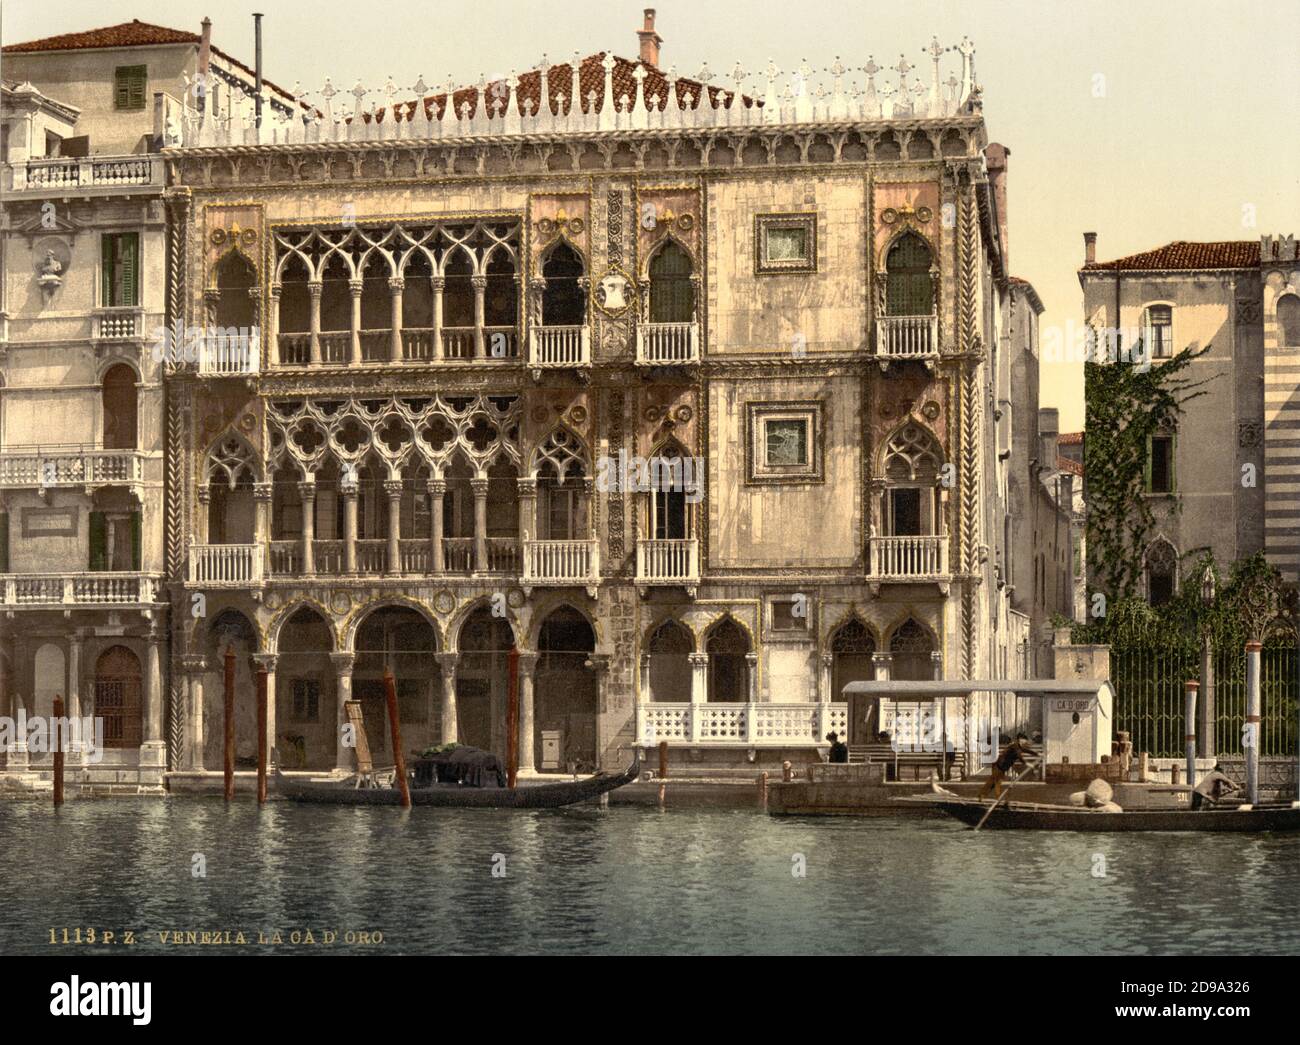 1895 ca. , VENEZIA ,  ITALY : The CA' D'ORO ( Palazzo Franchetti )on CANAL GRANDE  . Photochrom print colors edited by Detroit Publishing Co.  -  VENICE - VENETO -  ITALIA - FOTO STORICHE - HISTORY - GEOGRAFIA - GEOGRAPHY  - ARCHITETTURA - ARCHITECTURE  -     - ARTS - ARTE - OTTOCENTO - 800's - '800 - VENETO    ----  Archivio GBB Stock Photo